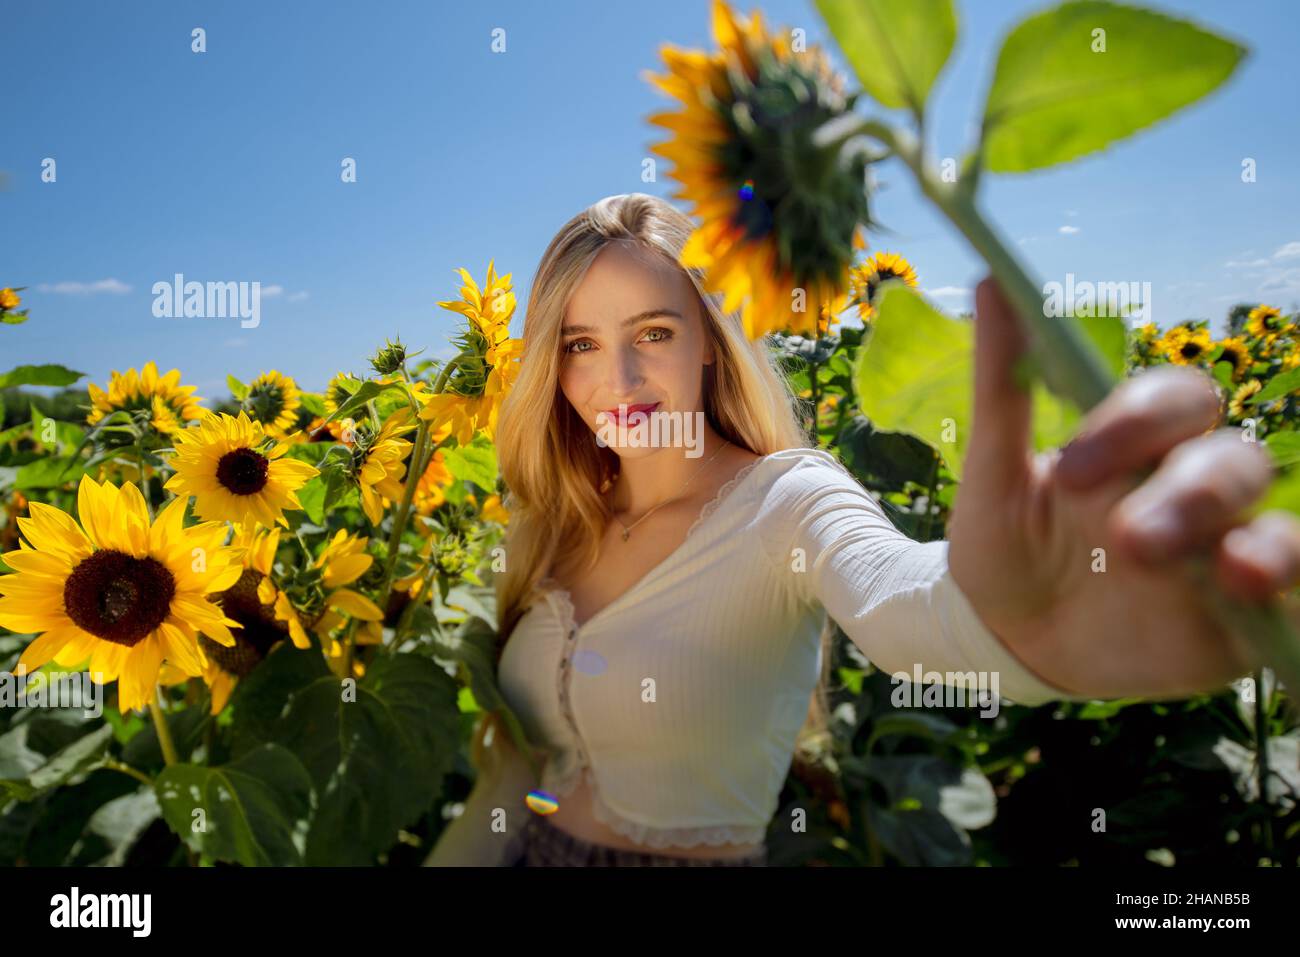 Schöne junge Frauen (22 Jahre) mit langen blonden Haaren posiert in einem Sonnenblumenfeld an einem heißen sonnigen Tag Stockfoto